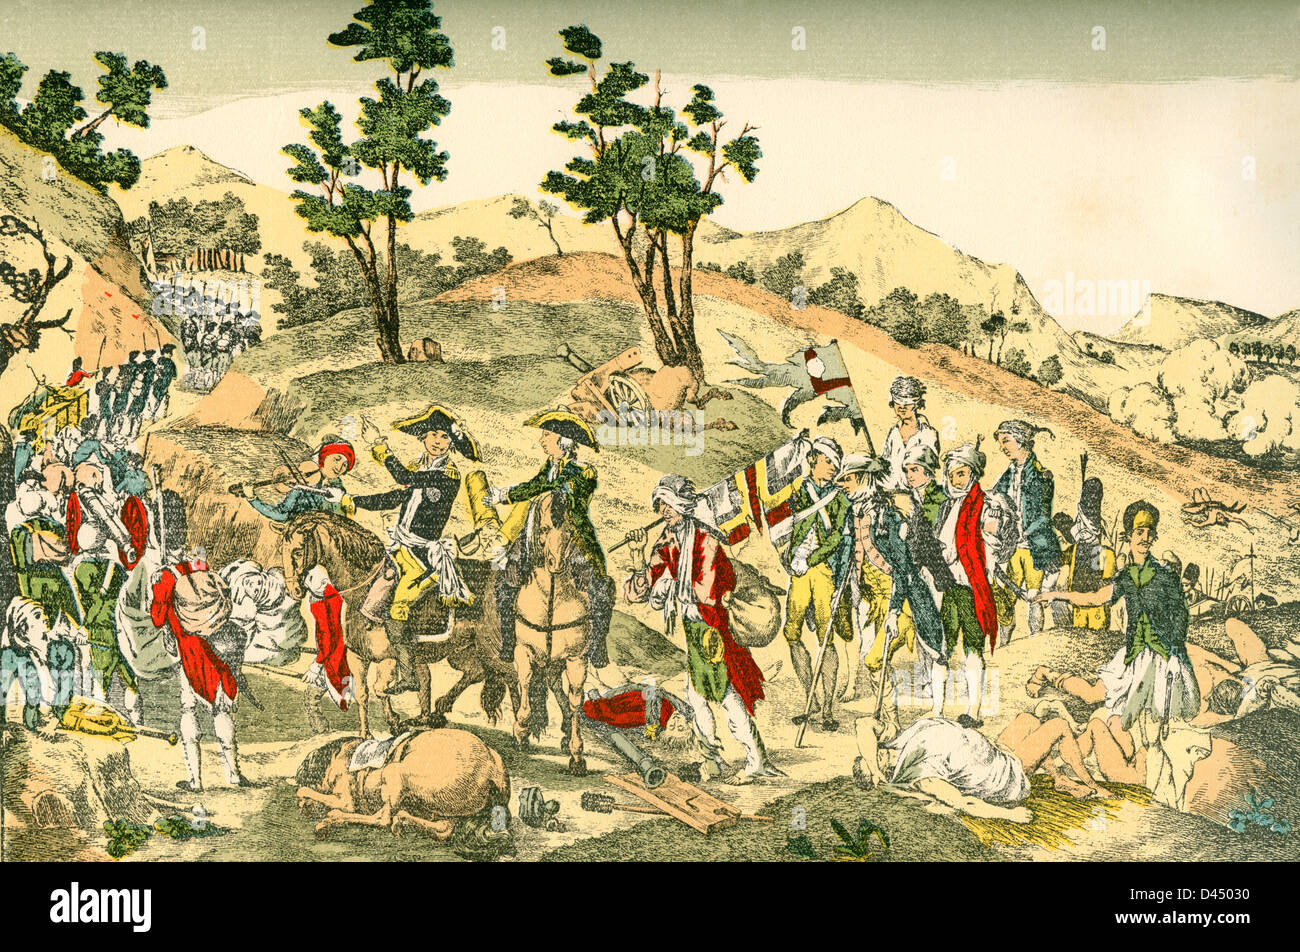 Ilustración que muestra satírica de la derrota de los prusianos en Valmy, Francia, durante las guerras revolucionarias francesas. Foto de stock